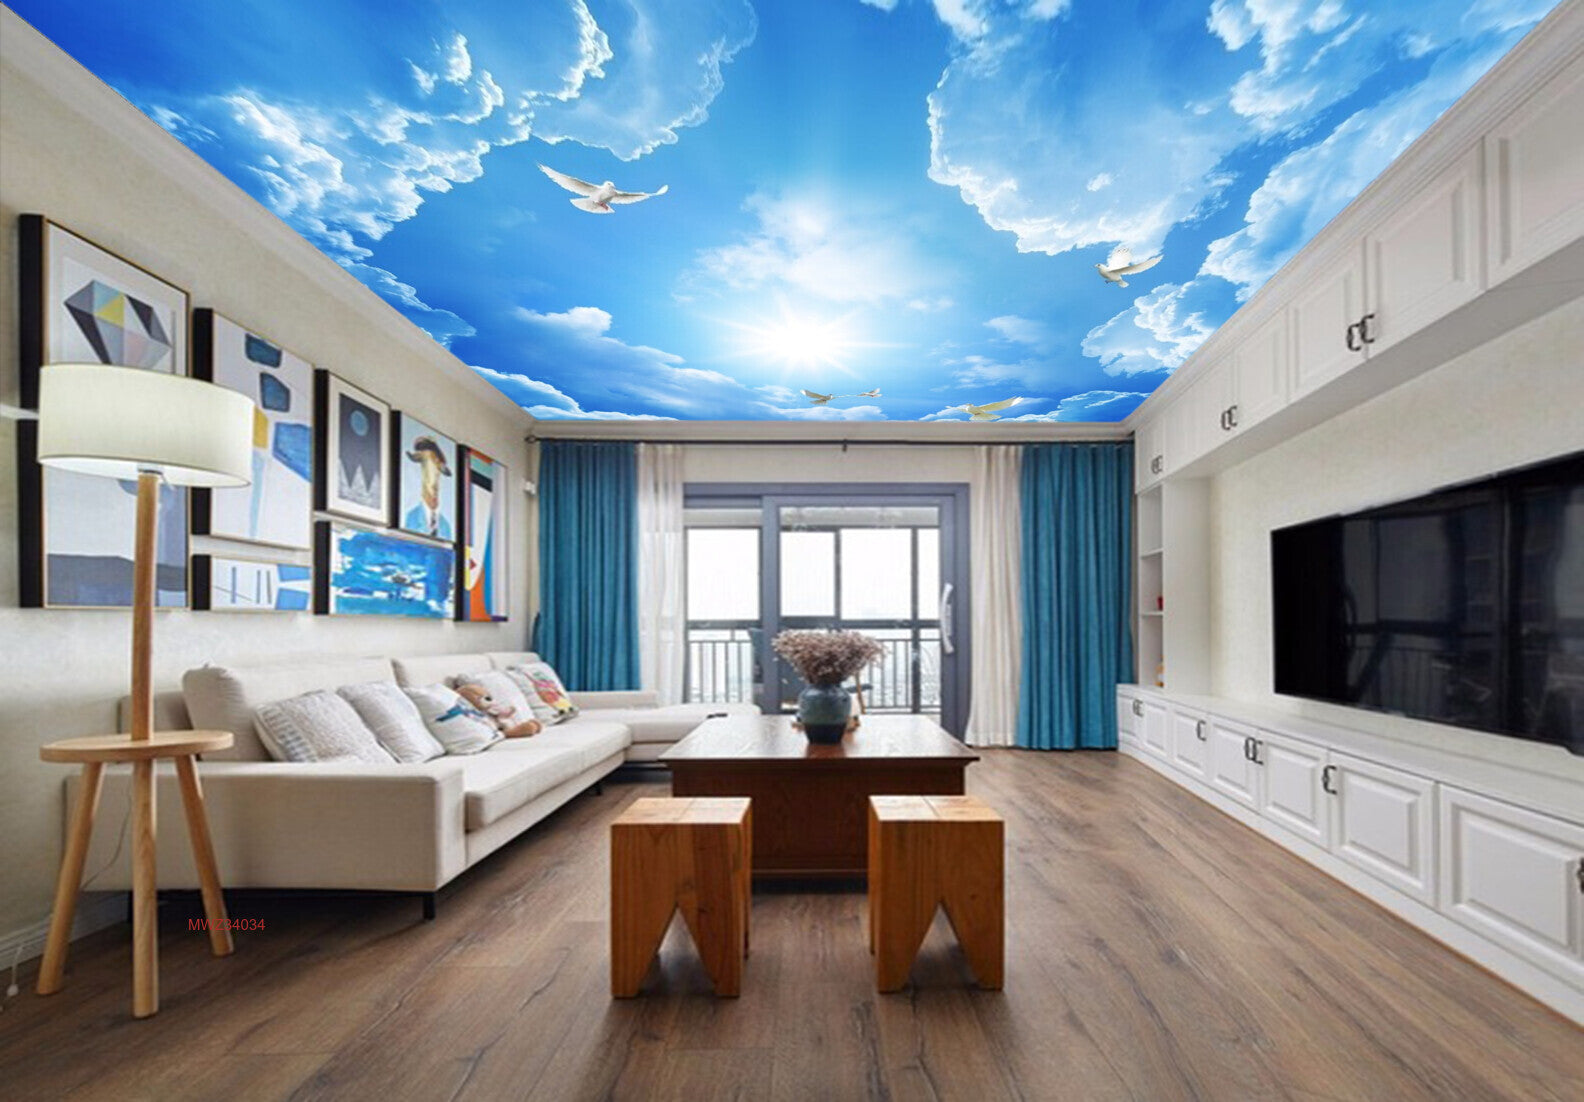 Avikalp MWZ3403 Clouds Birds Sky HD Wallpaper for Ceiling